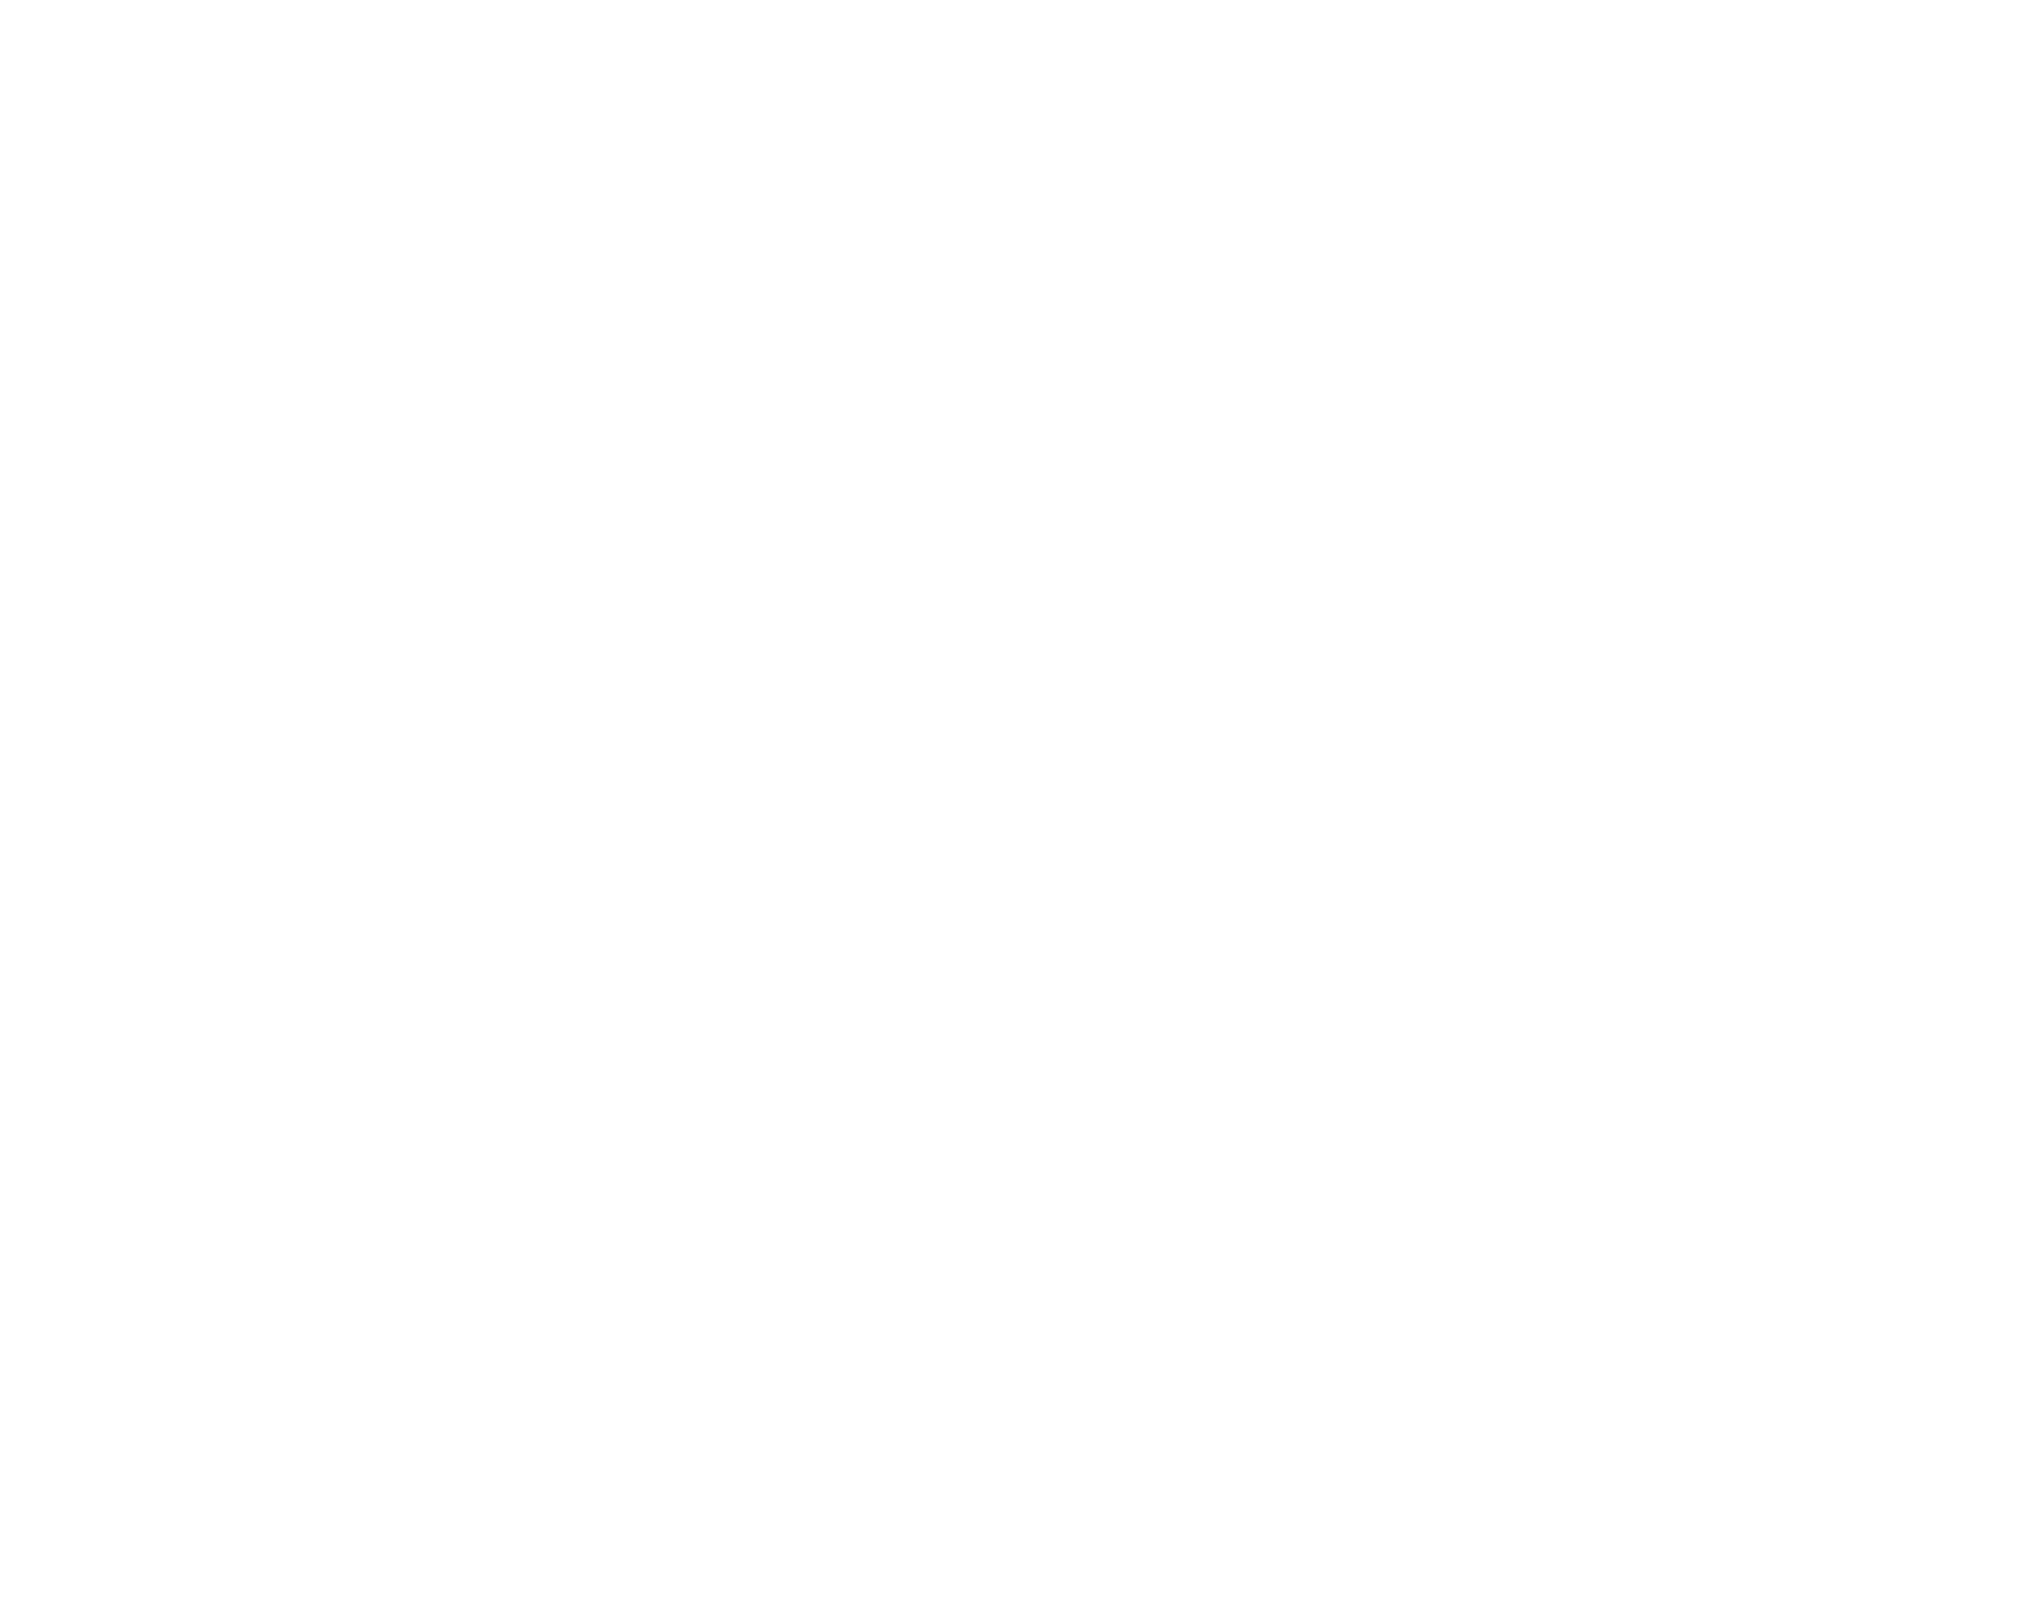 Urban Fence Company